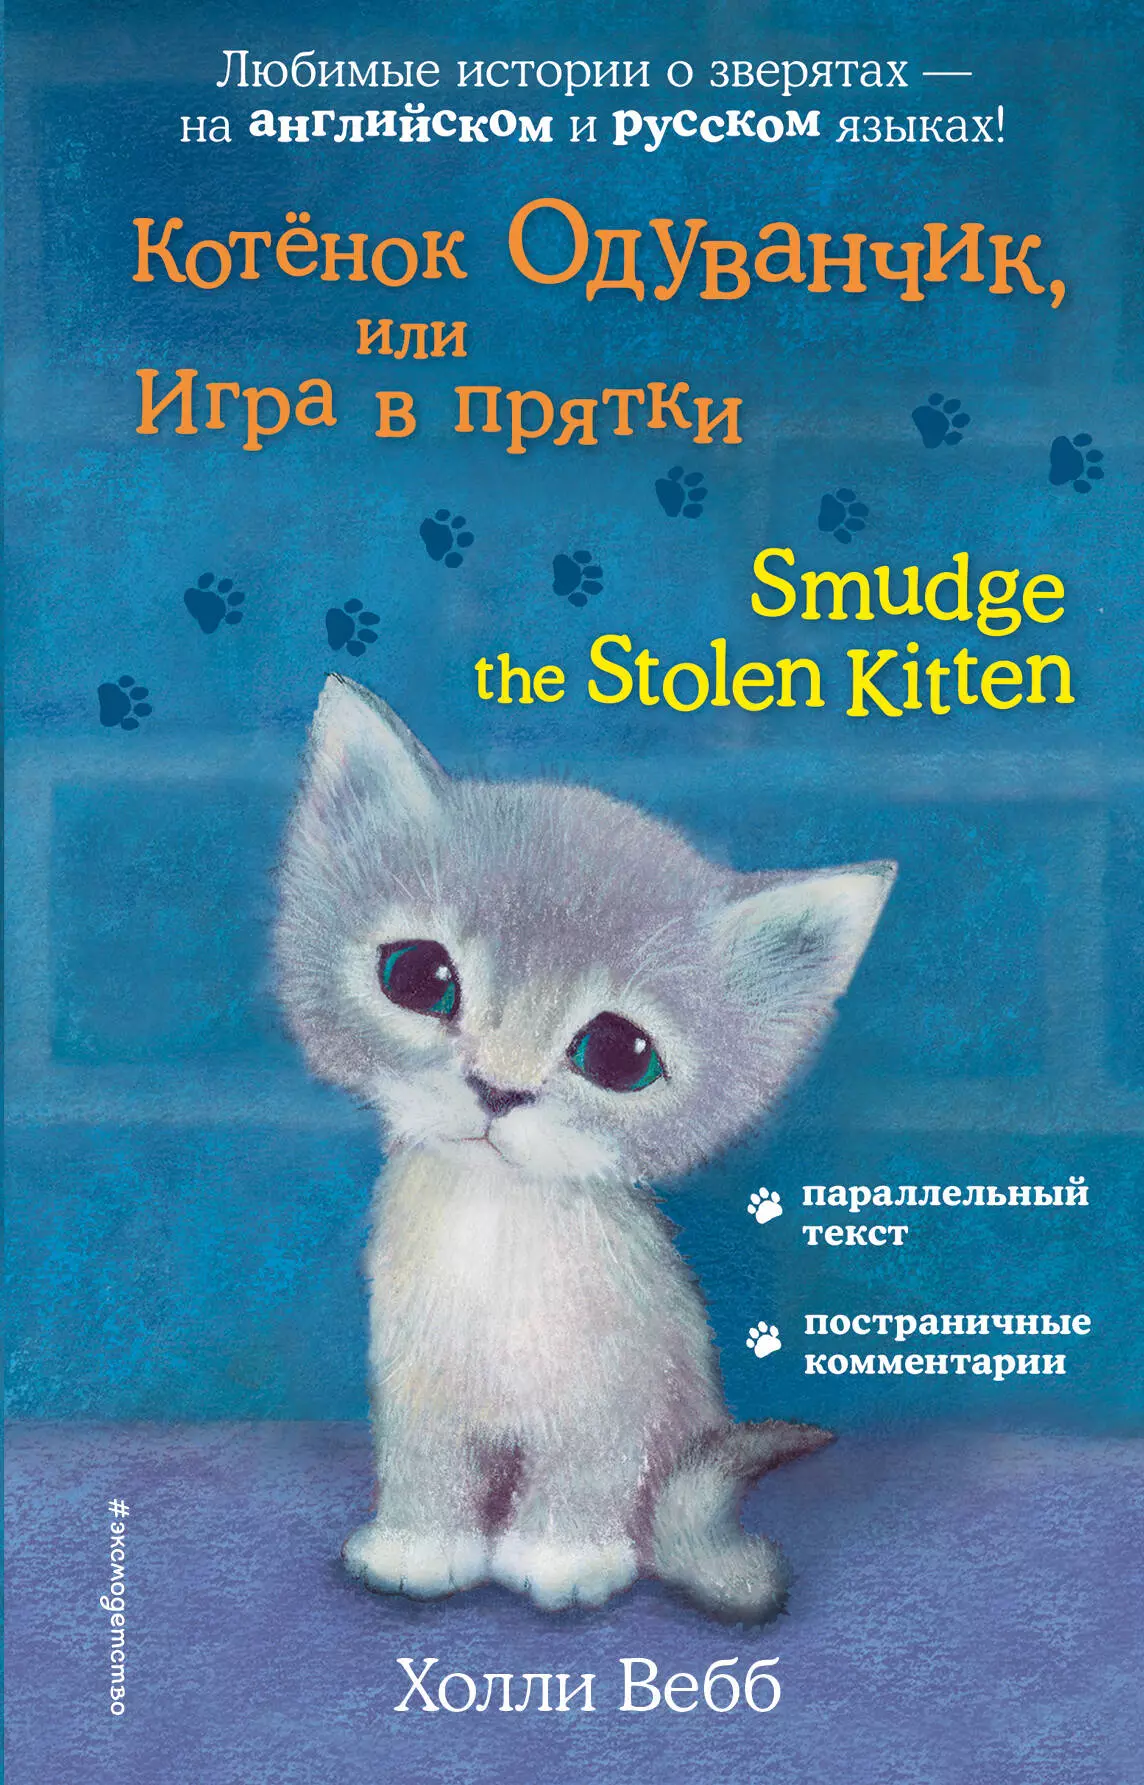 Тихонова Анна Алексеевна, Вебб Холли - Котёнок Одуванчик, или Игра в прятки = Smudge the Stolen Kitten